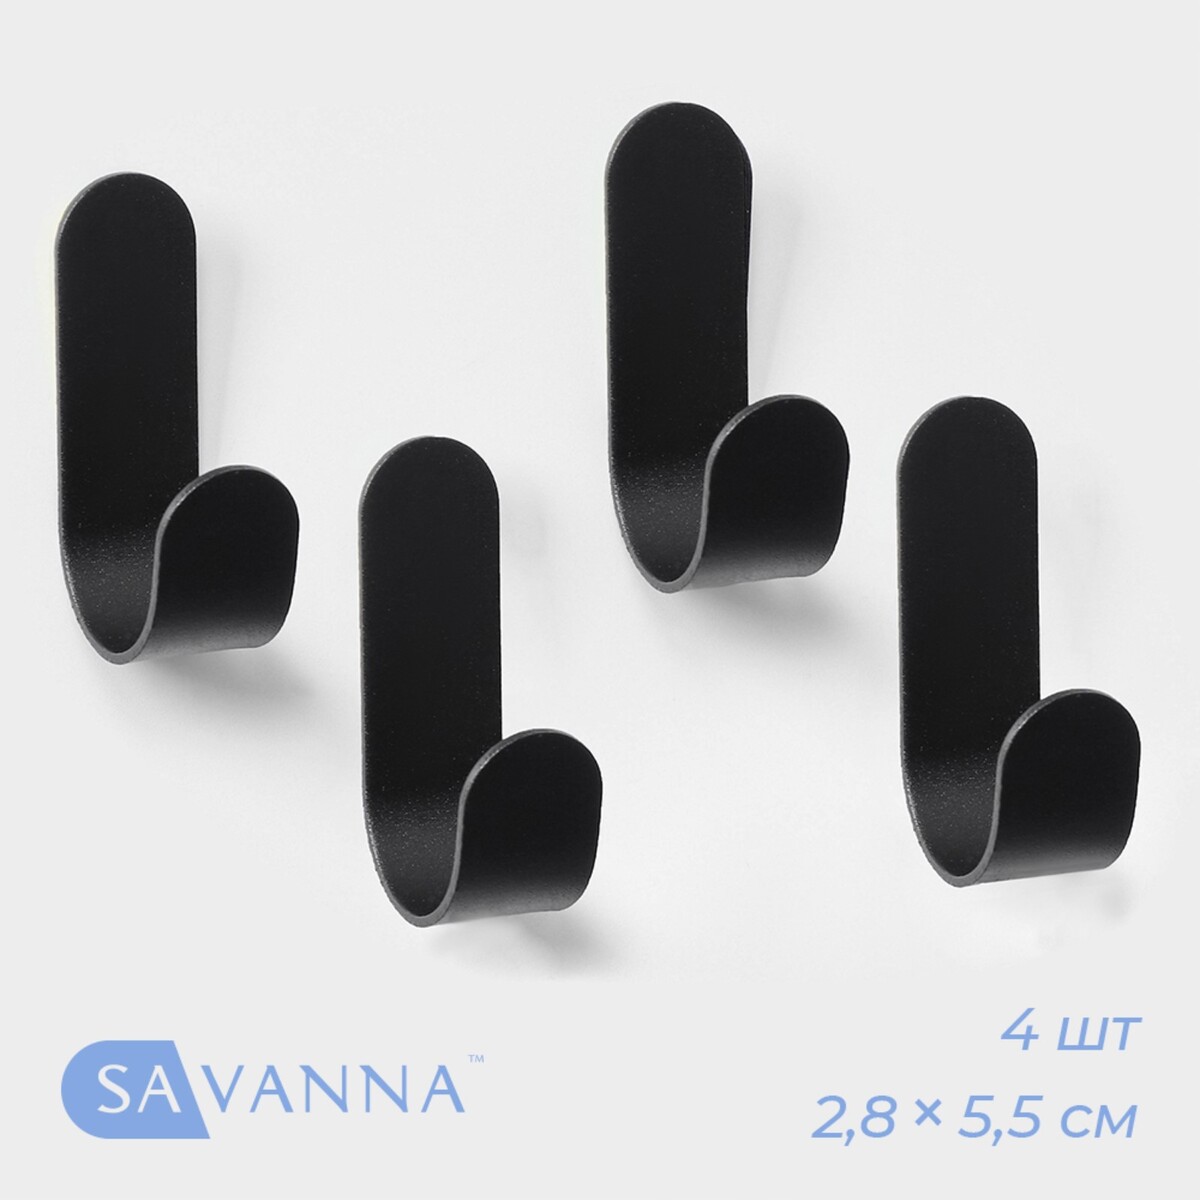     savanna black loft hook, 4 , 2, 8 5, 5 1, 8 